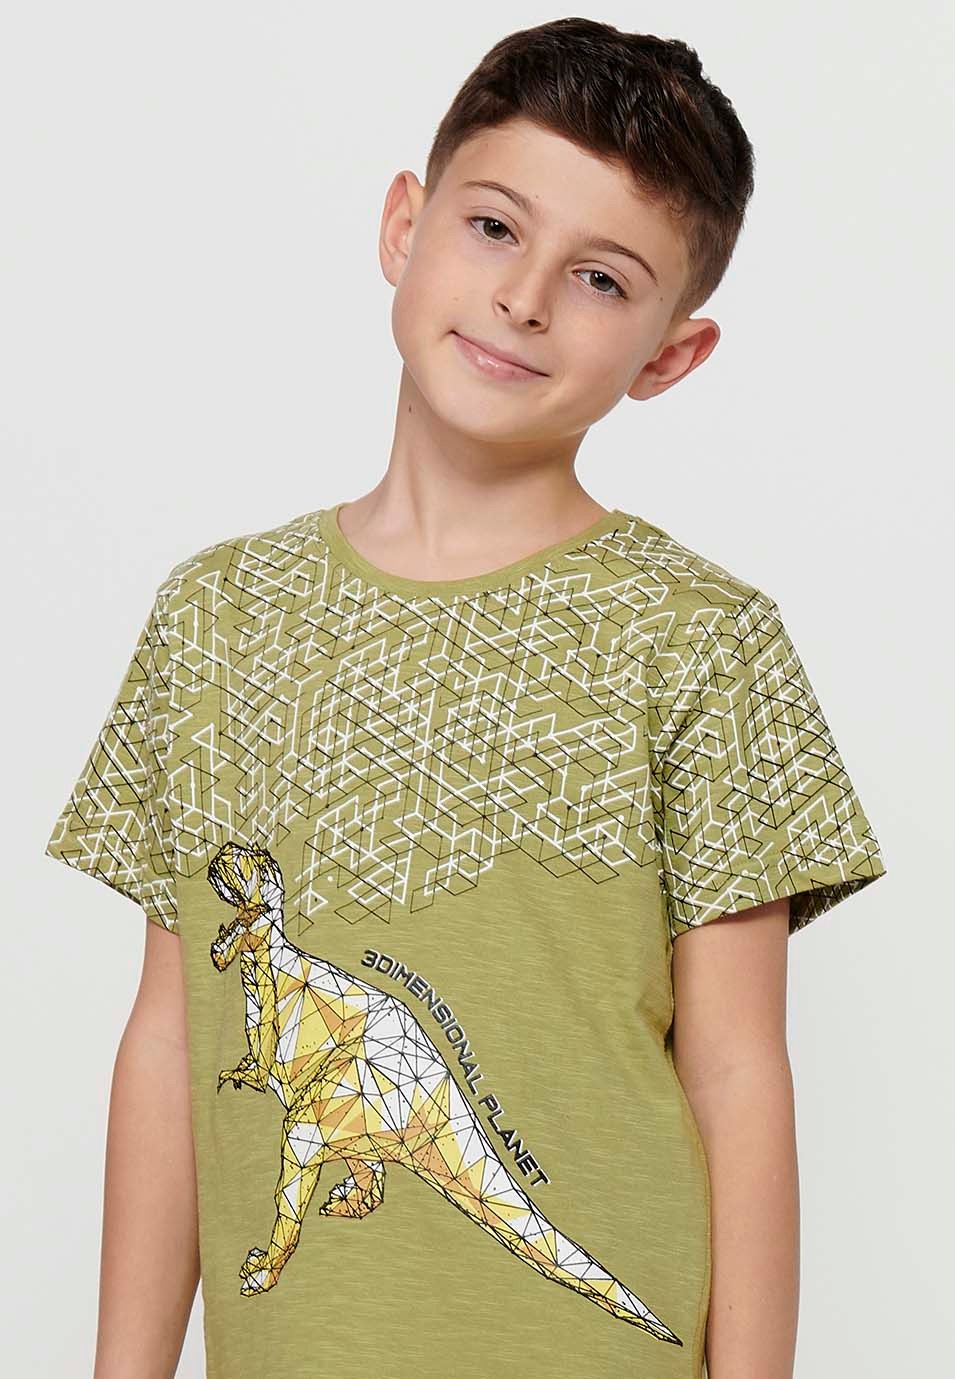 Camiseta de manga corta de Algodón y cuello redondo con Estampado delantero de Color Kaki para Niño